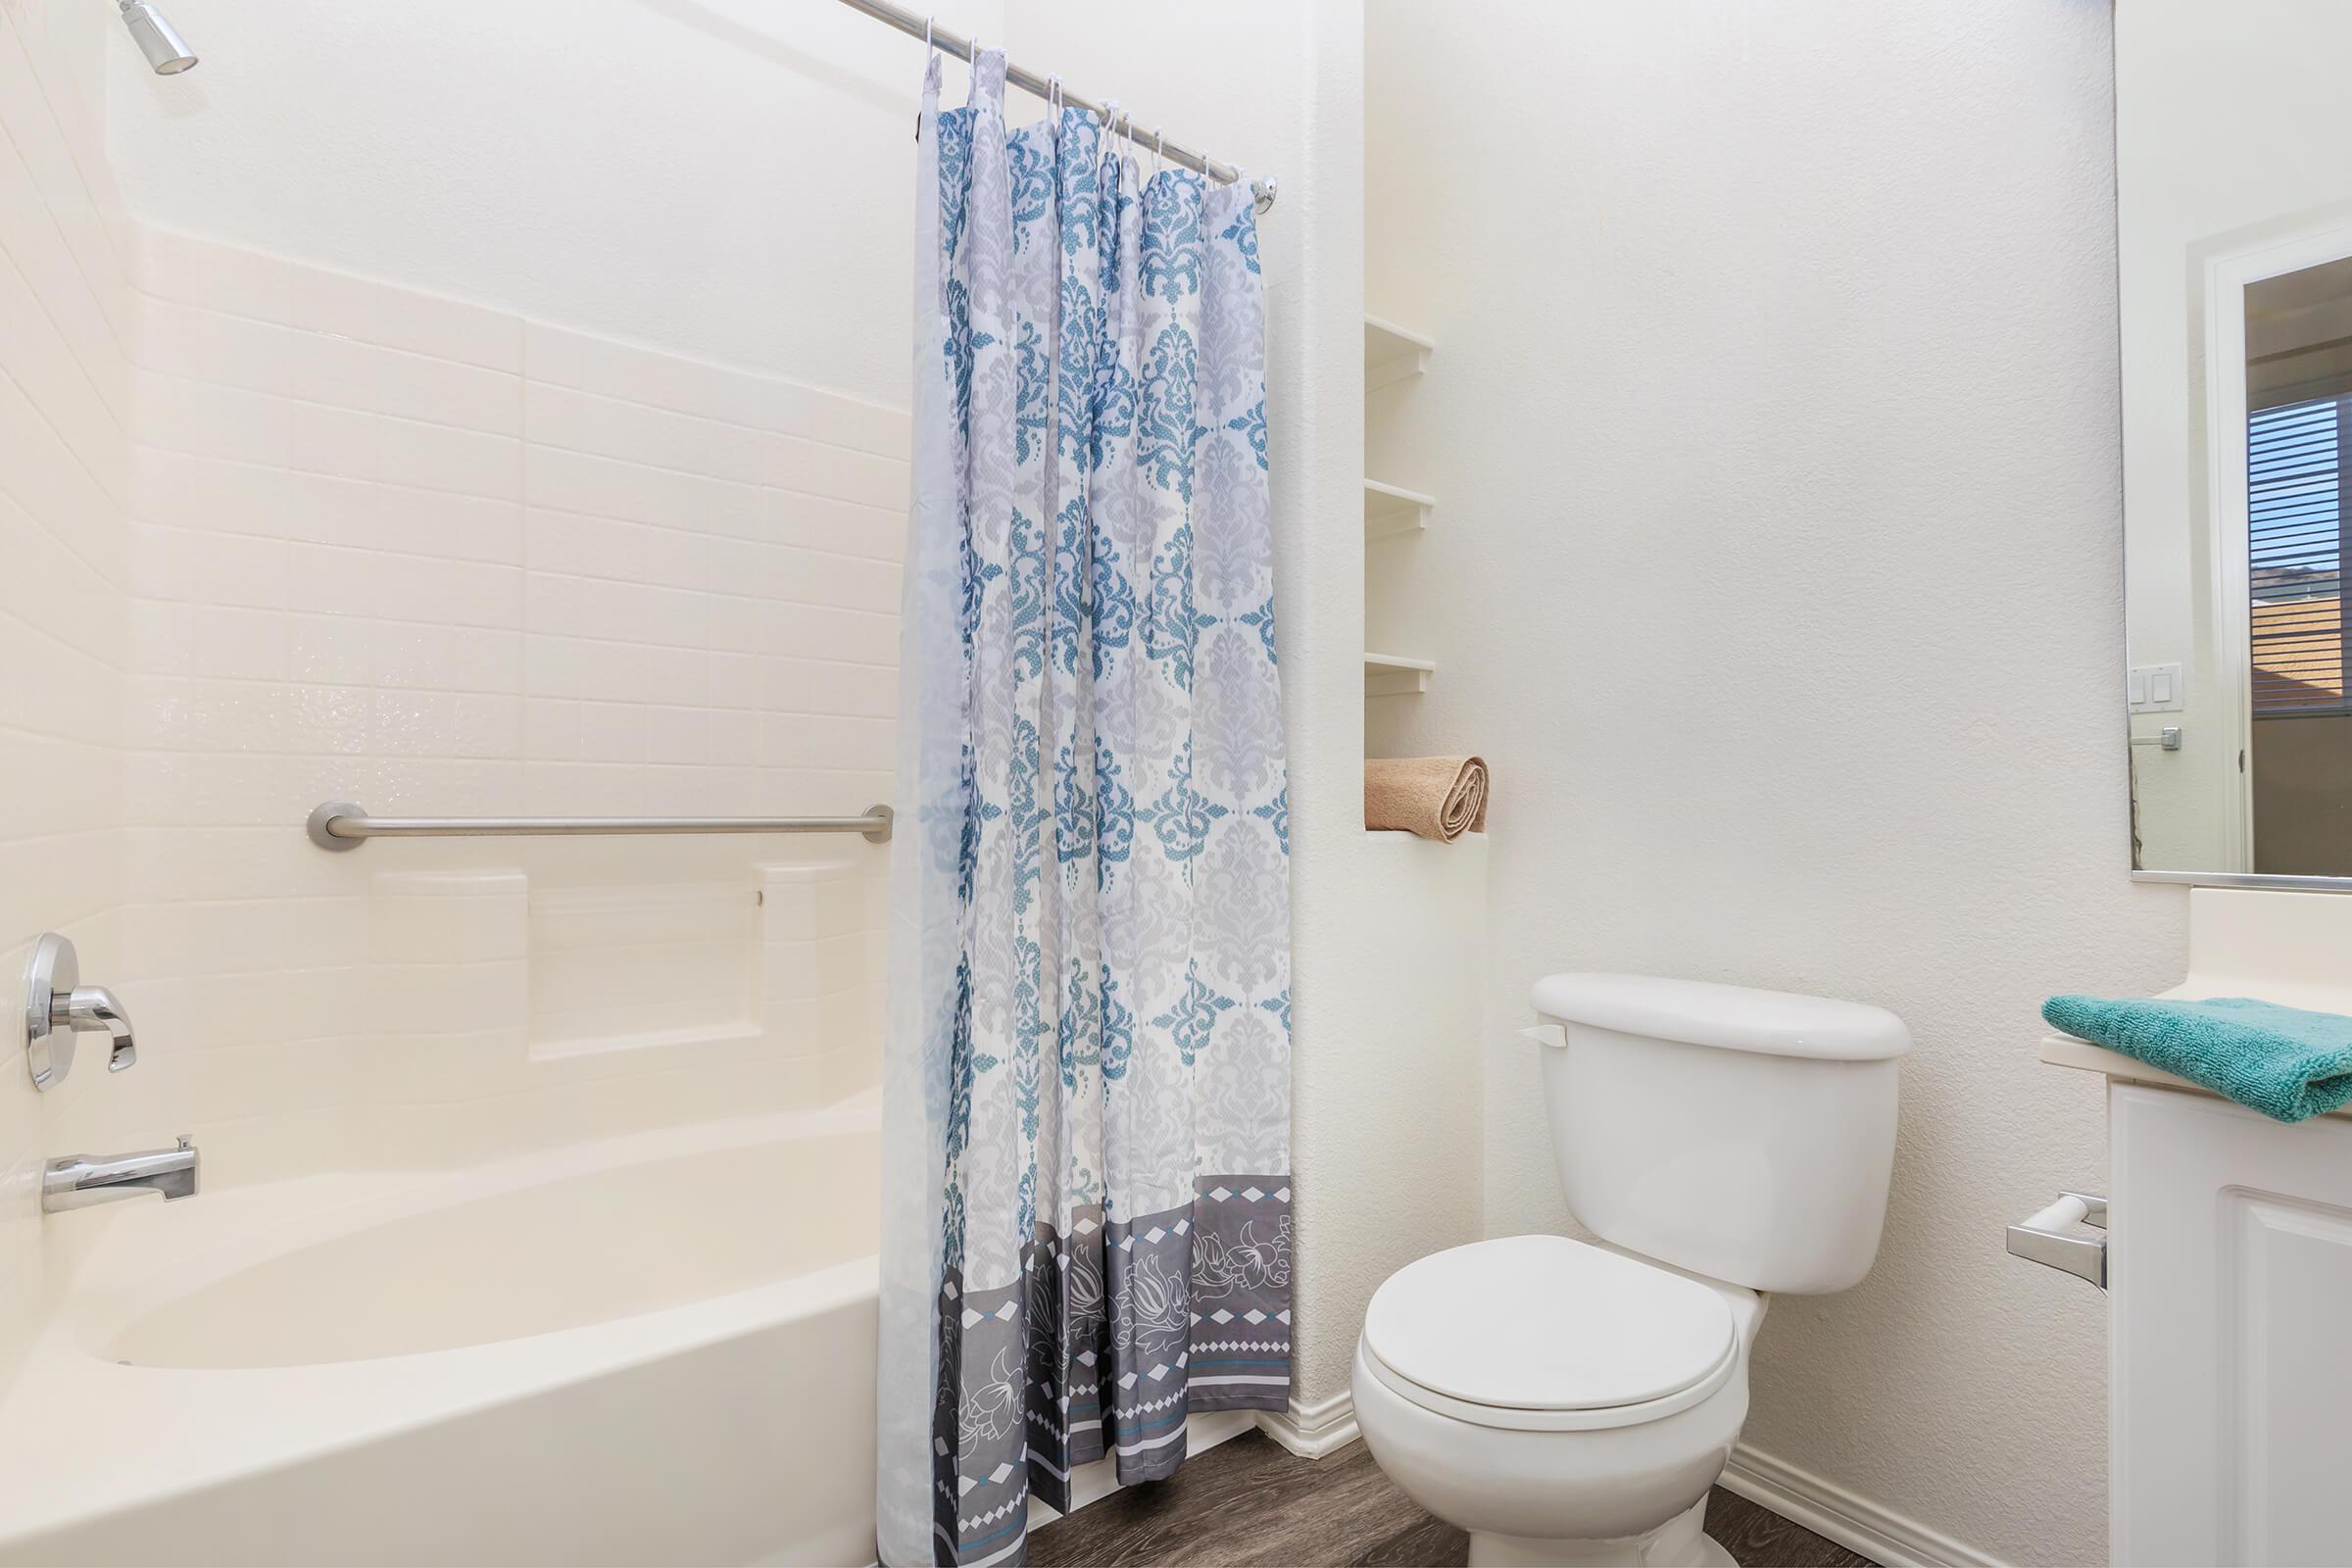 Bathroom with a blue shower curtain